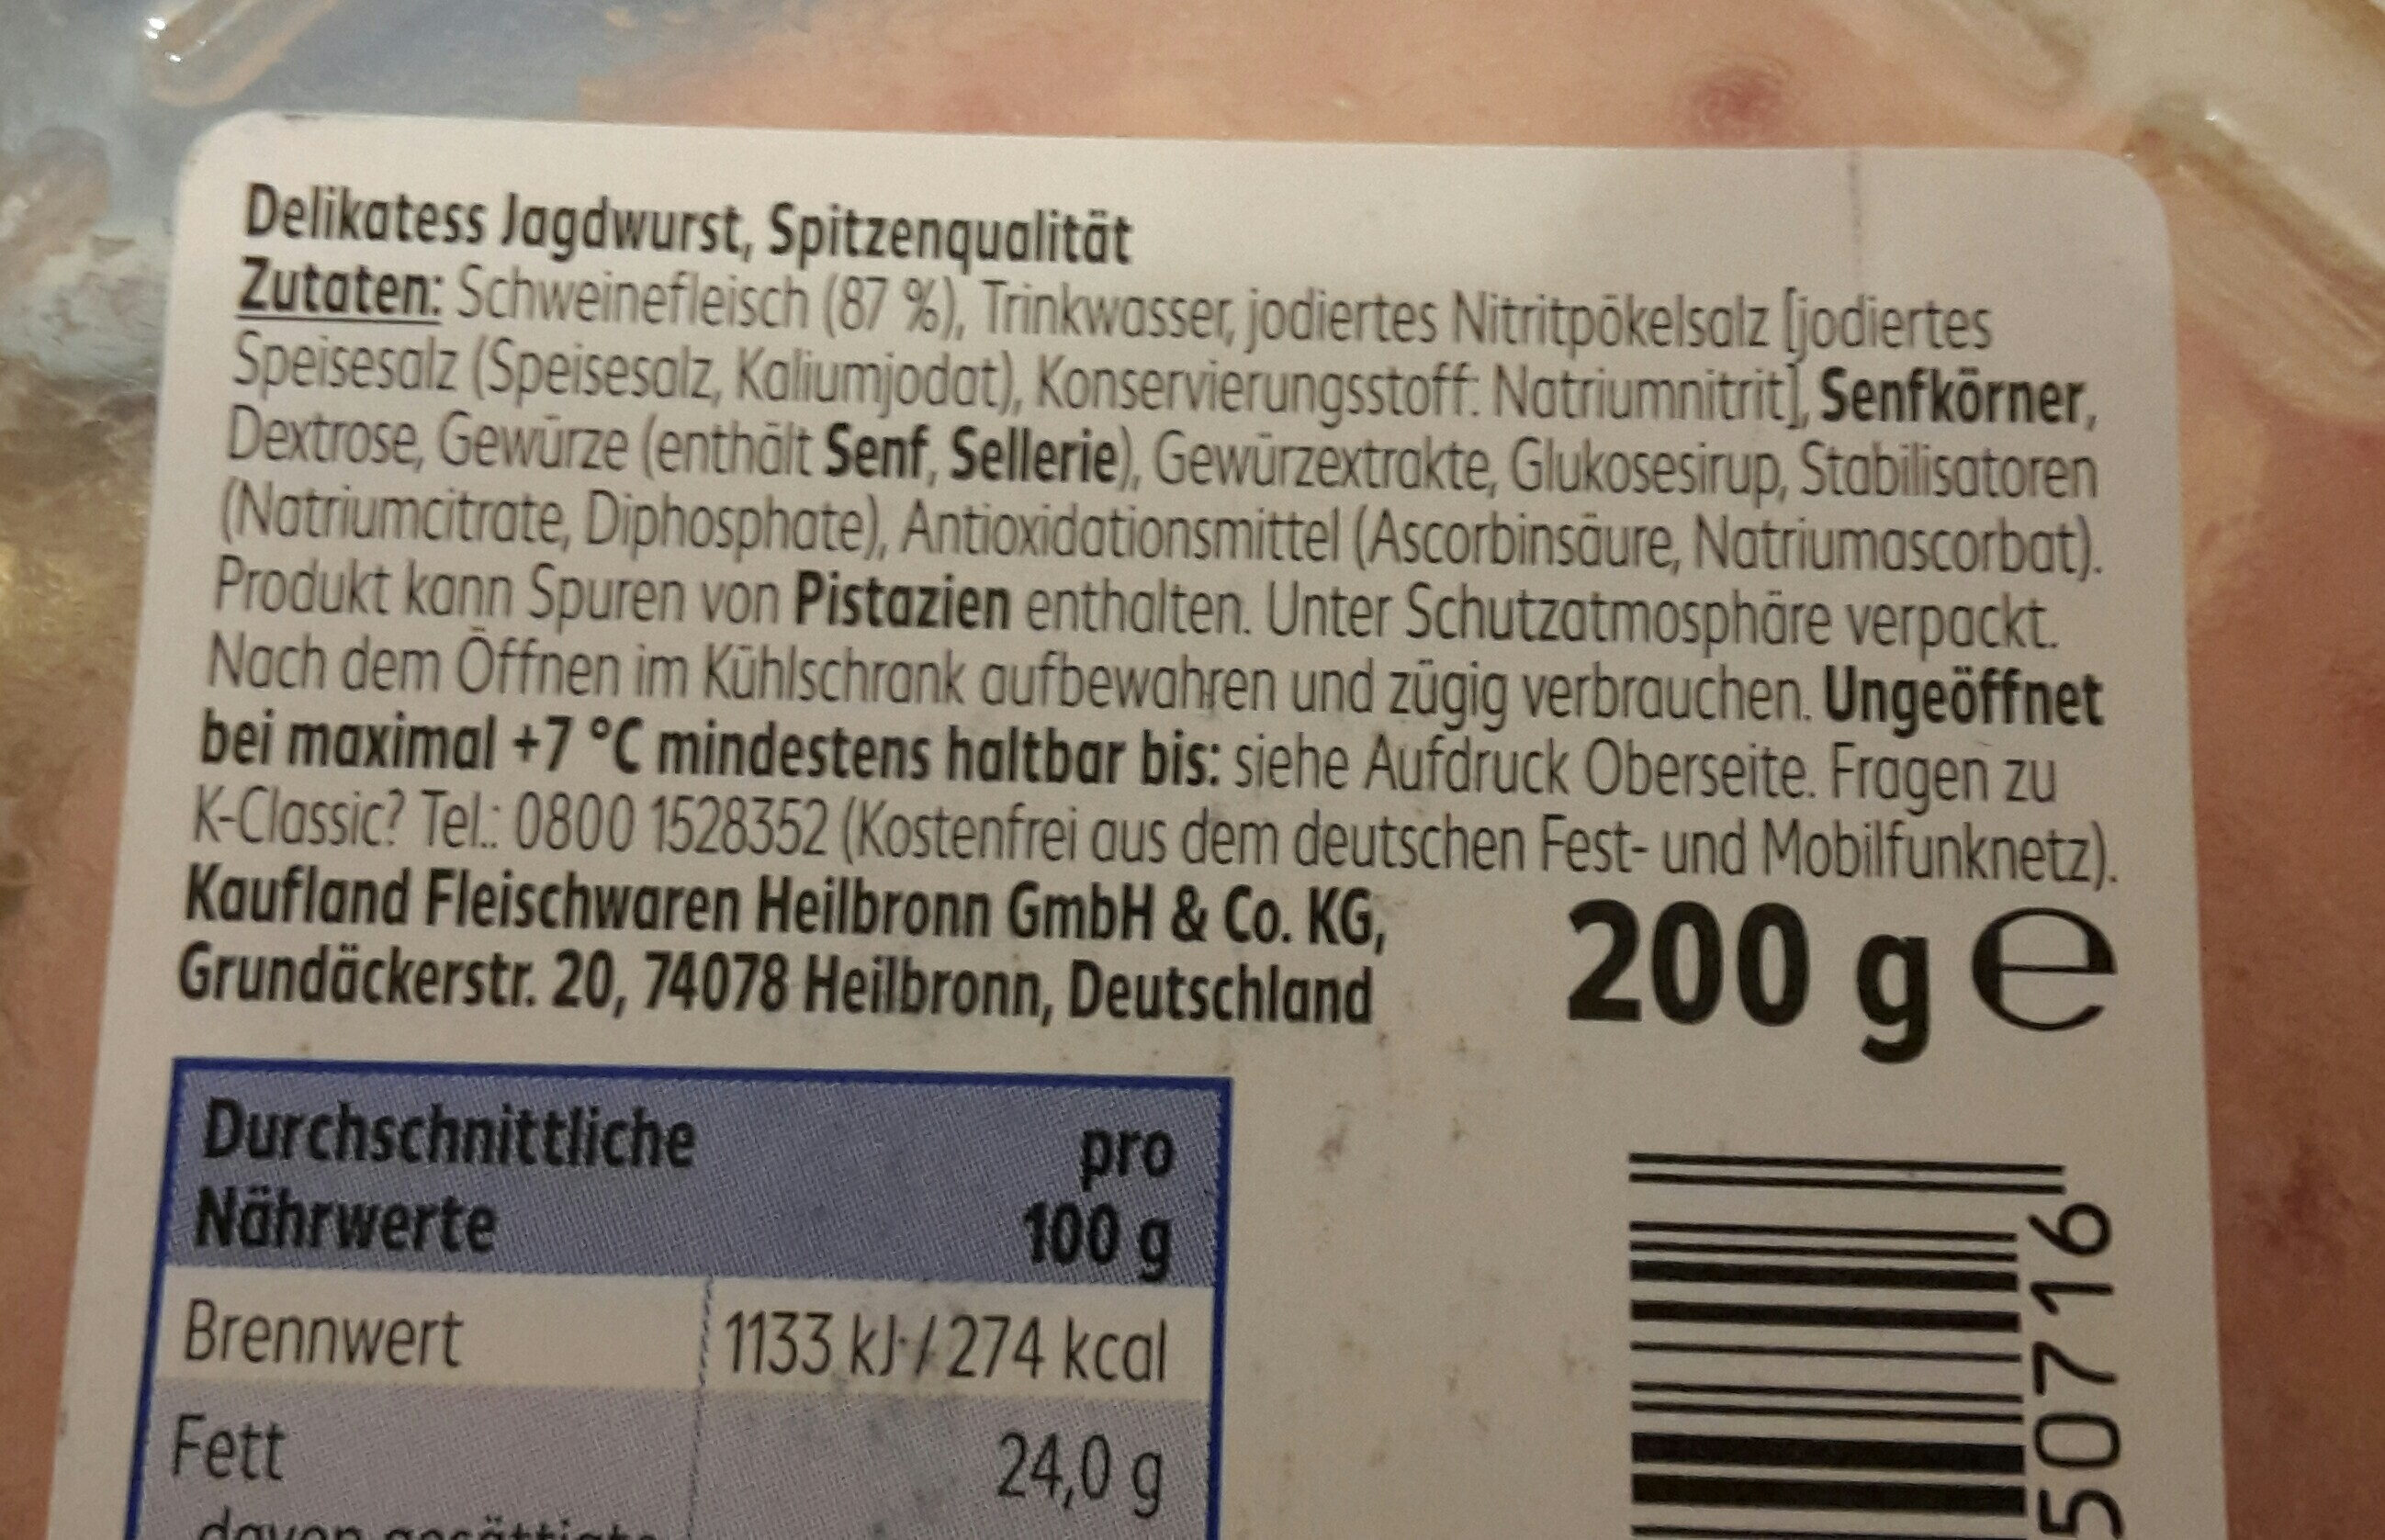 Jagdwurst - Ingredients - de